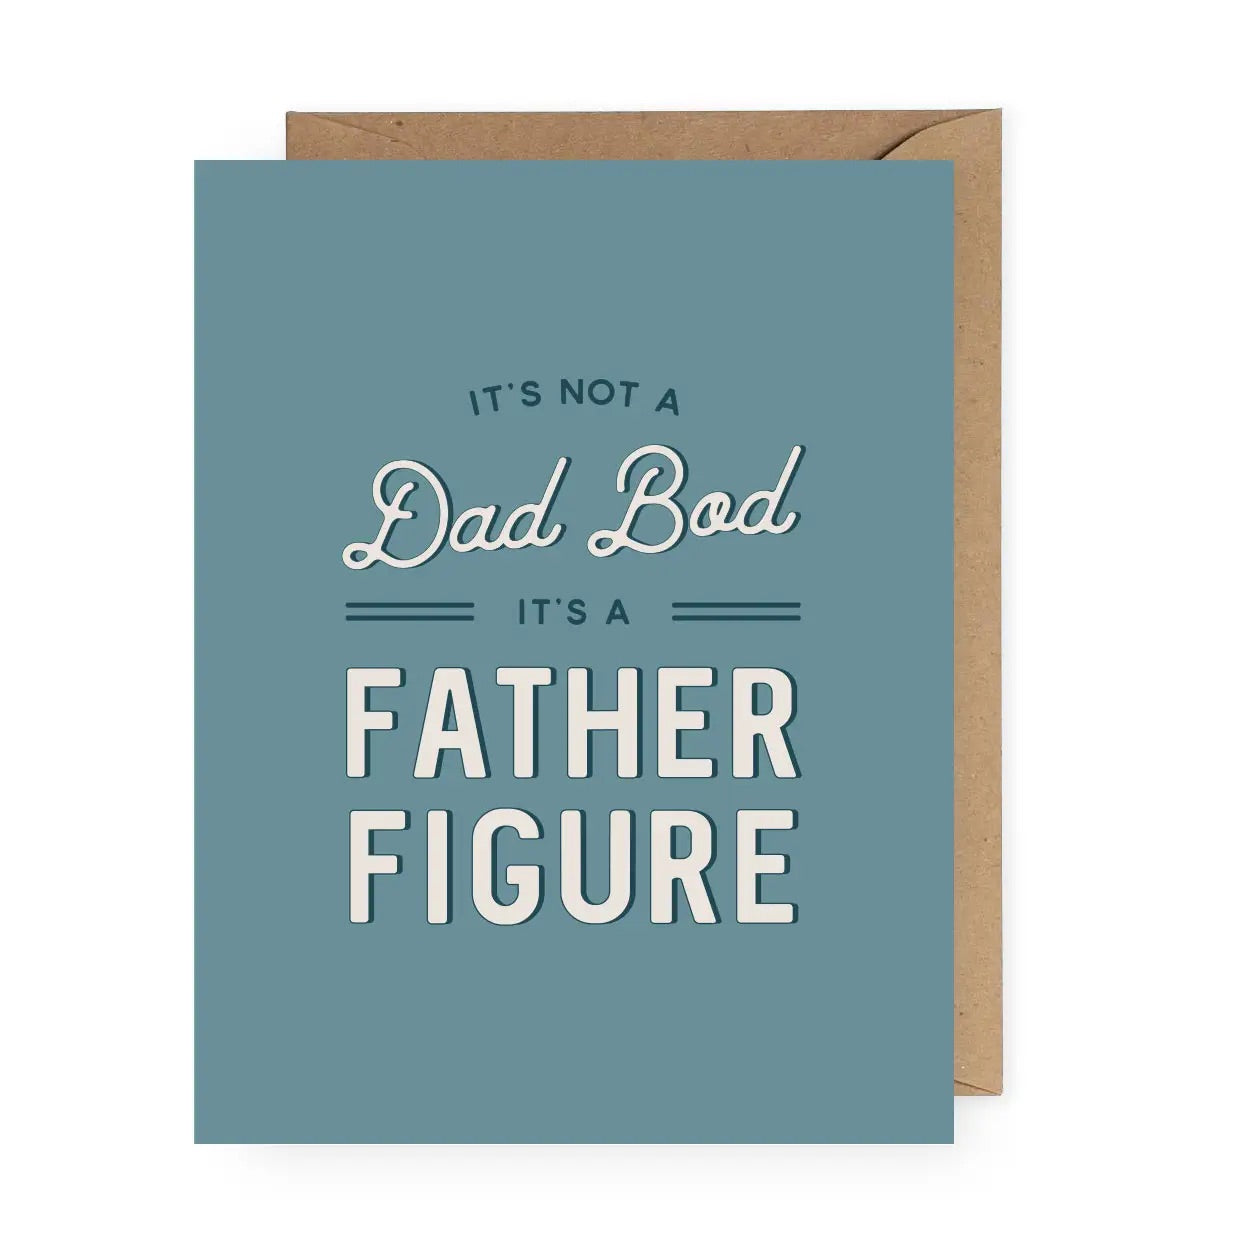 Card - Dad bod